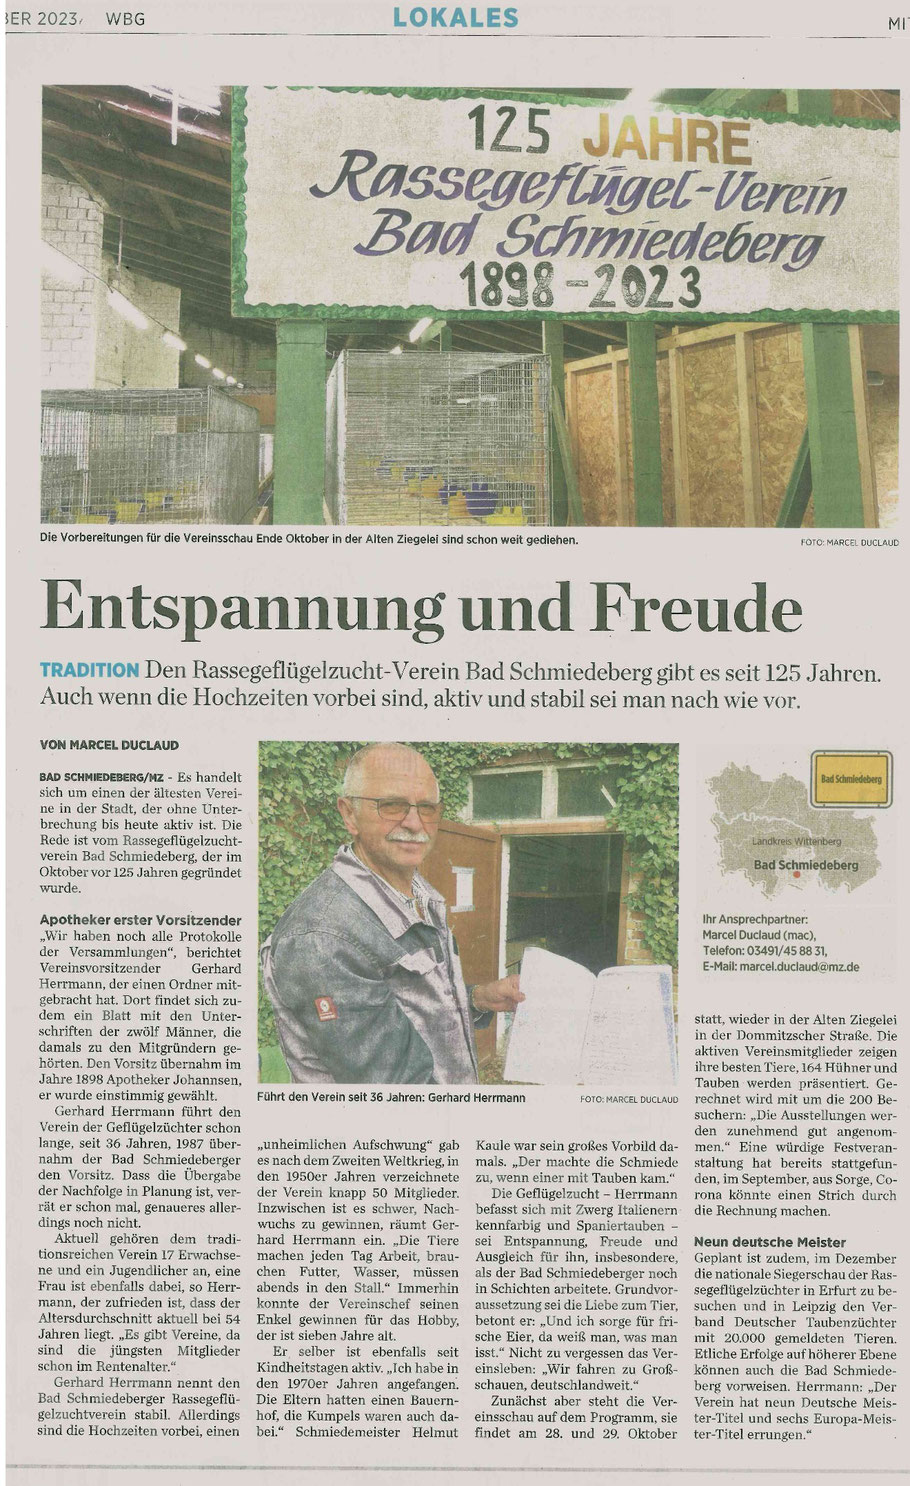 Bericht in der Mitteldeutschen Zeitung "MZ" im Oktober 2023